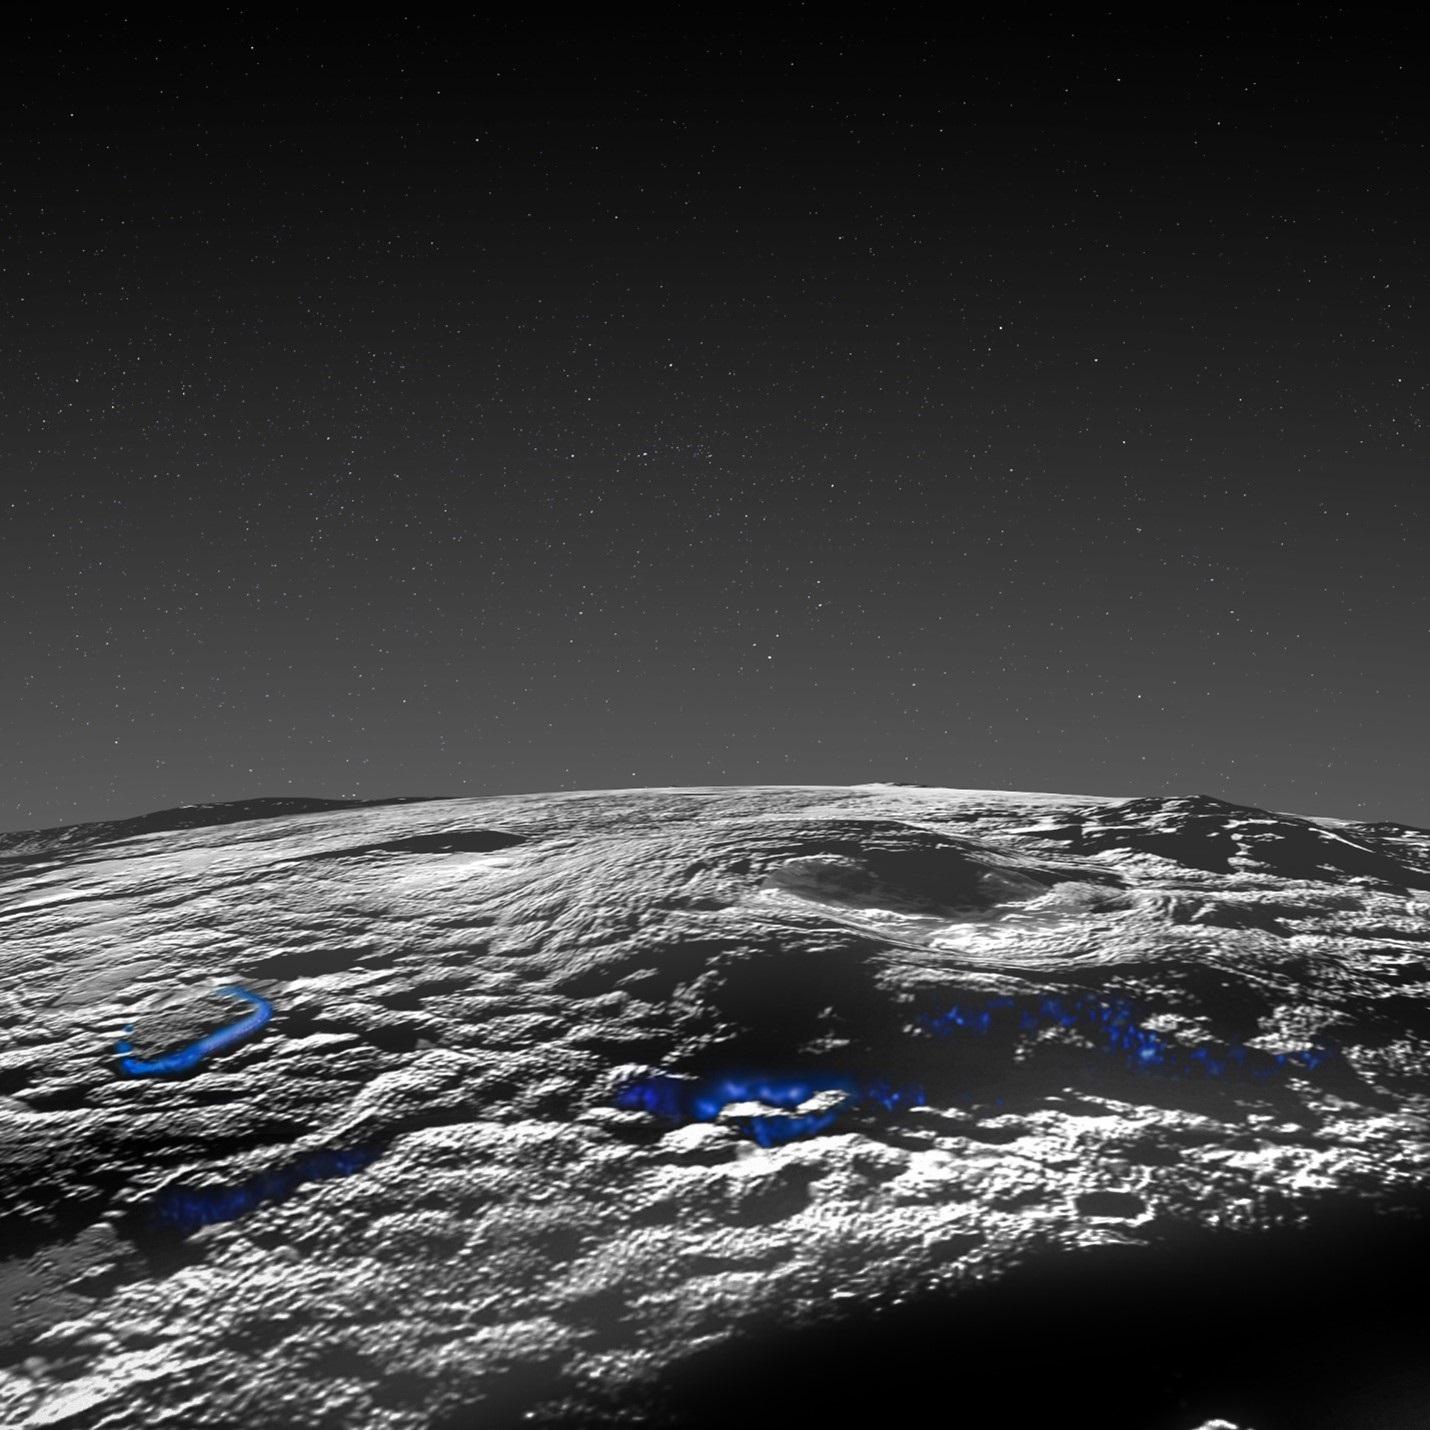 Sputnik Planitia, la région étudiée, se trouve au sud-ouest du "cœur" de Pluton. Elle contient plusieurs grands dômes et des élévations pouvant atteindre 7 kilomètres de haut et 30 à 100 kilomètres de large, avec des collines, des monticules et des dépressions interconnectées couvrant les côtés et les sommets de la plupart des grandes structures. En bleu, les processus volcaniques. [NASA/Johns Hopkins University Applied Physics Laboratory - Southwest Research Institute]